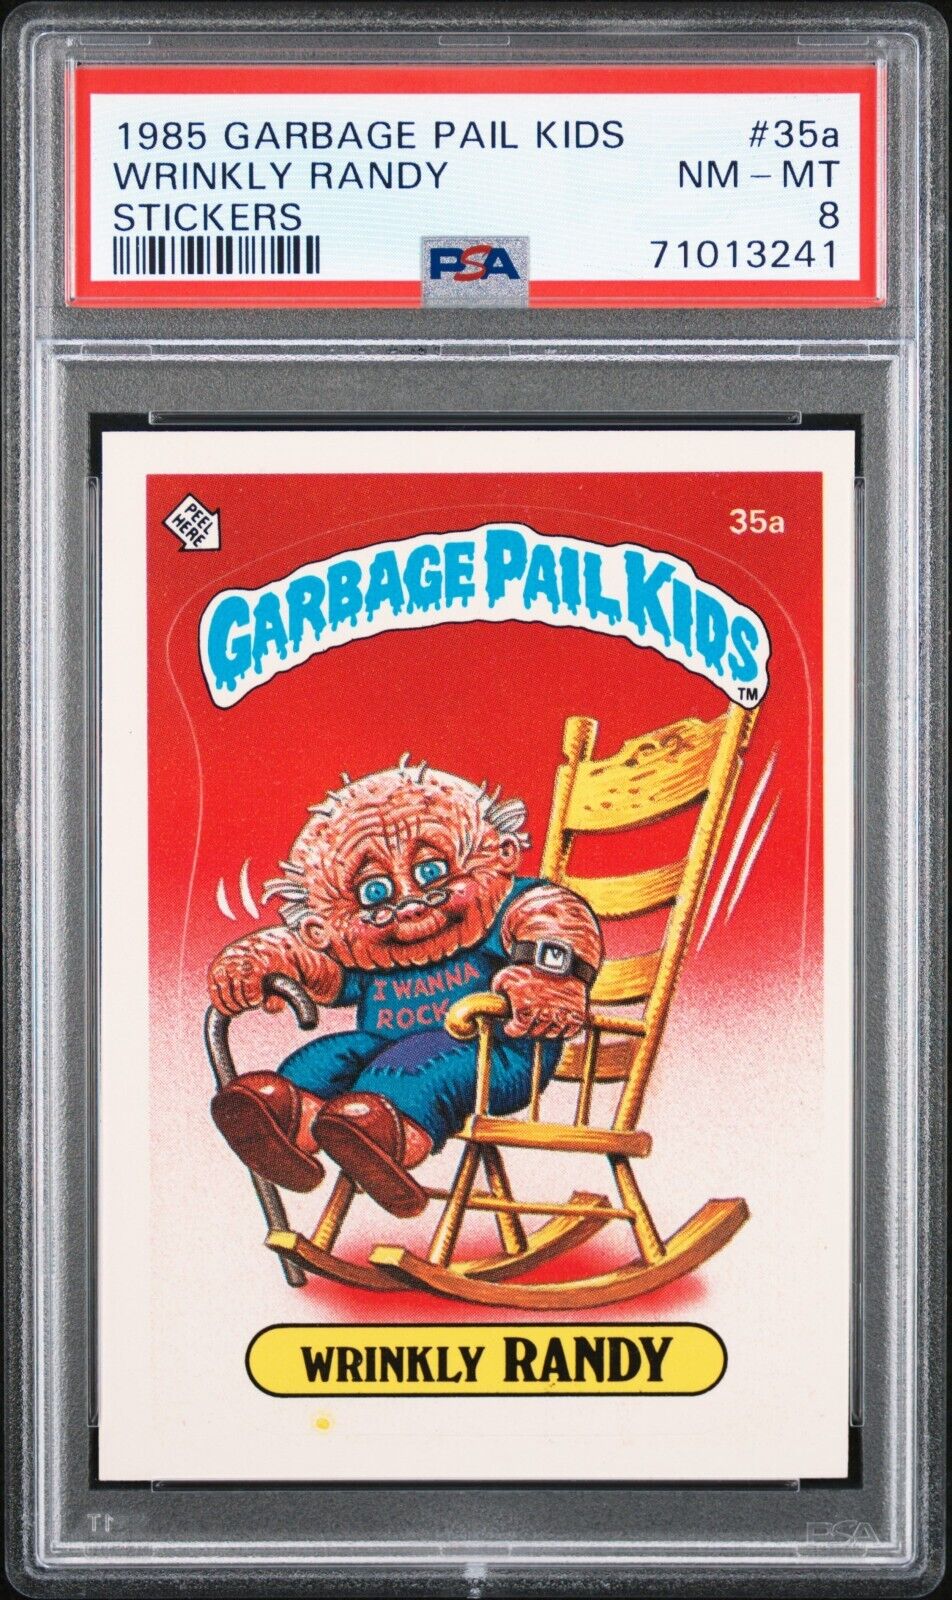 1985 Topps OS1 Garbage Pail Kids Series 1 WRINKLY RANDY 35A Matte Card PSA 8